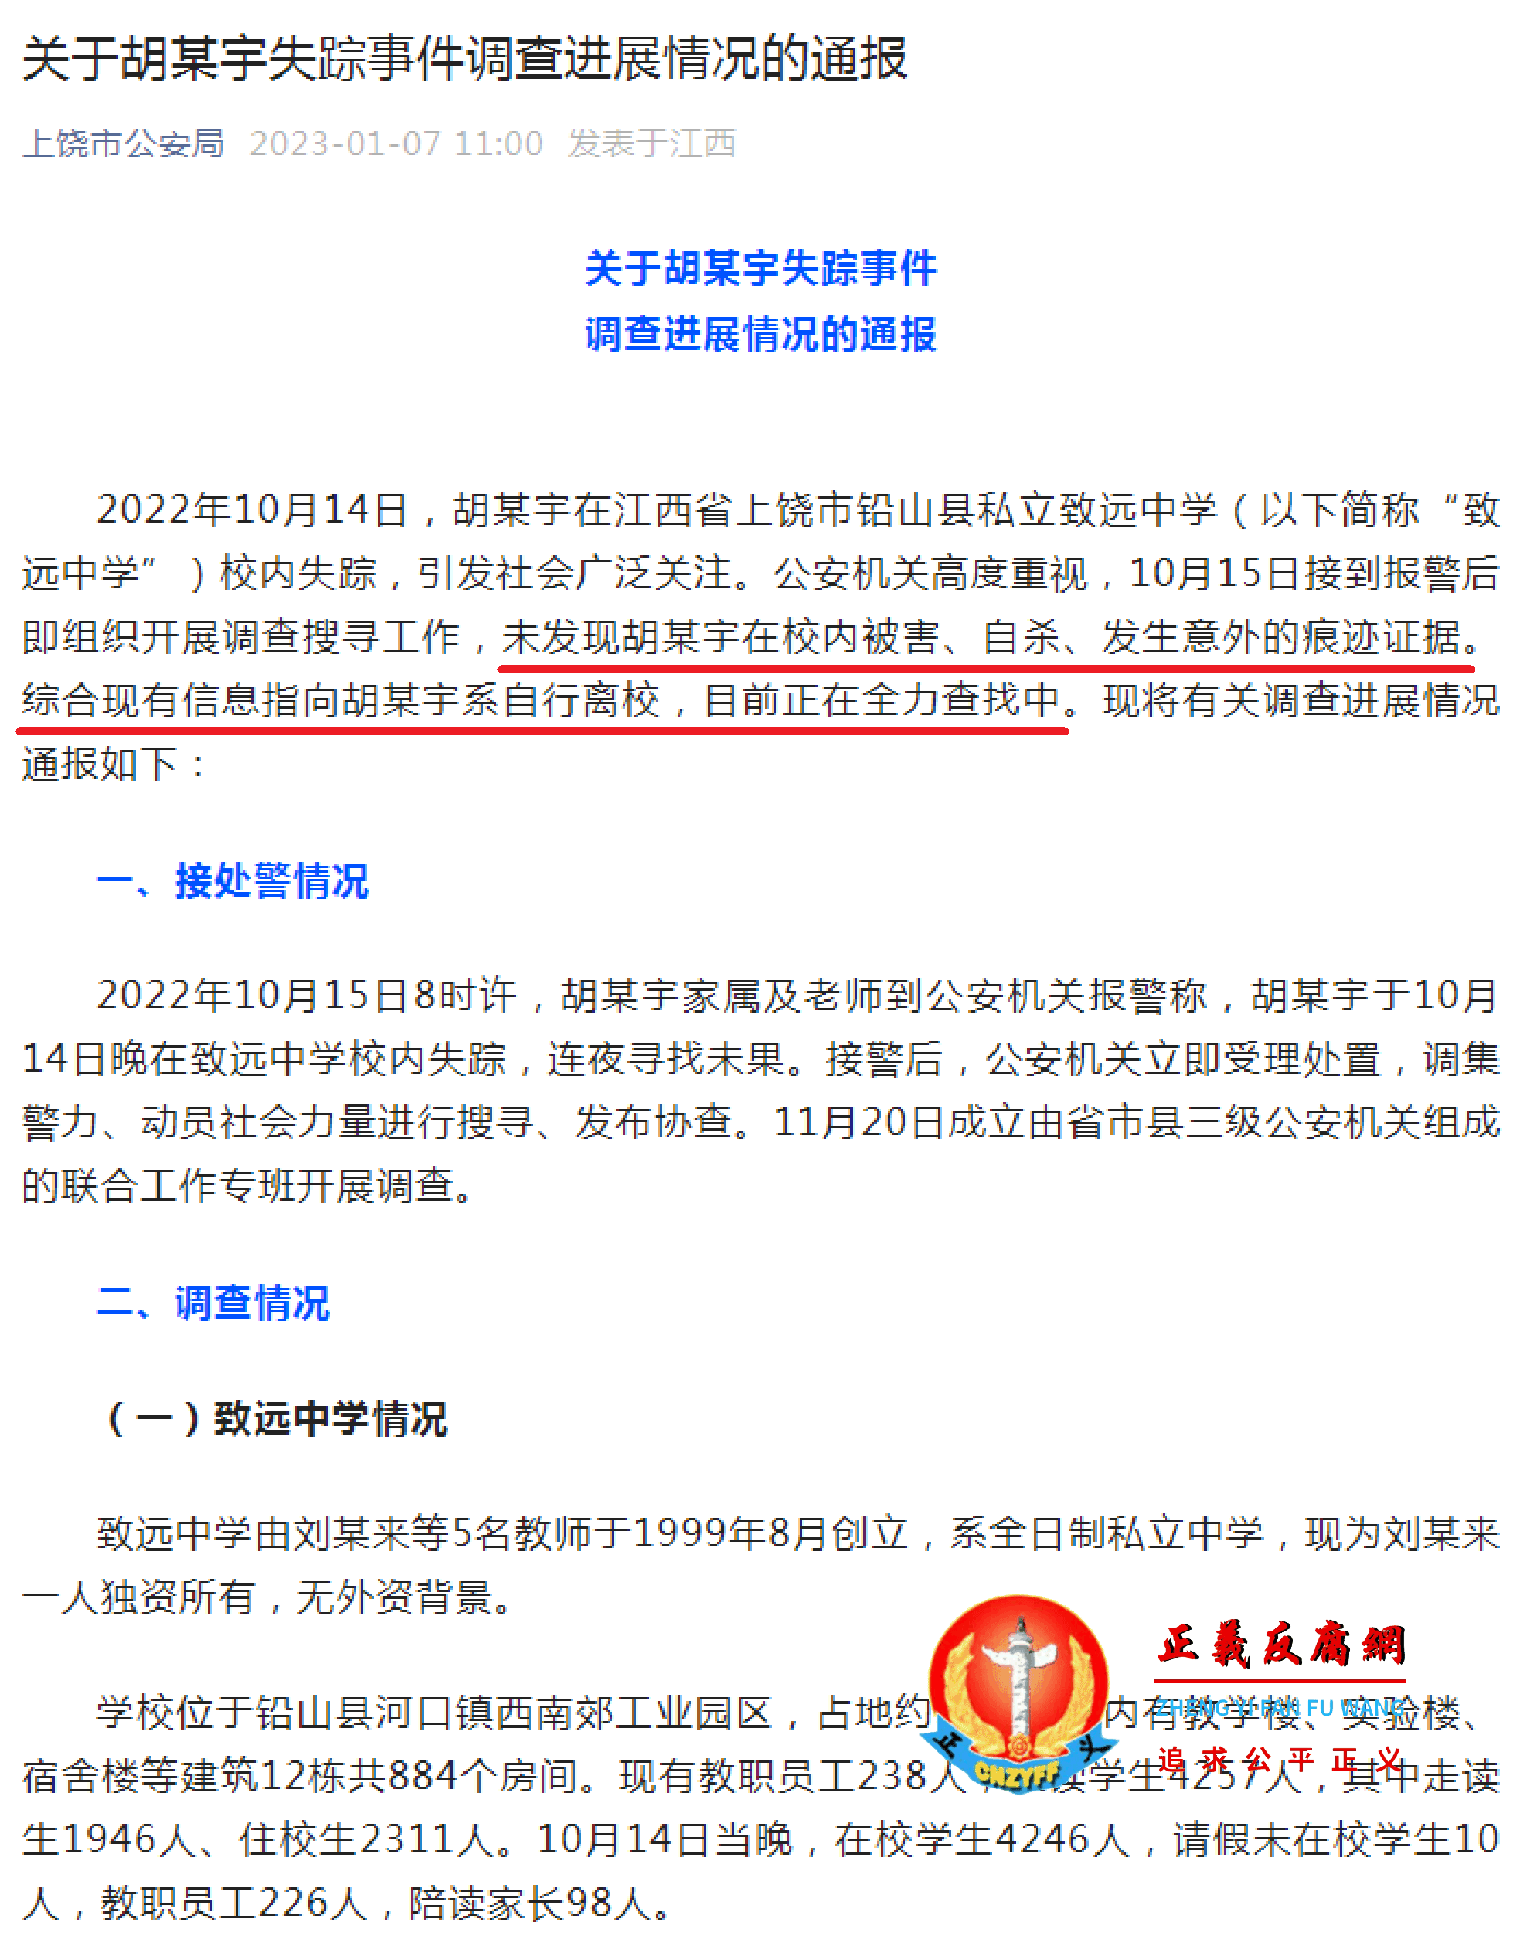 2023年1月7日，江西省上饶市公安局在公众号“上饶市公安局”正式通报《关于胡某宇失踪事件调查进展情况的通报》。.png